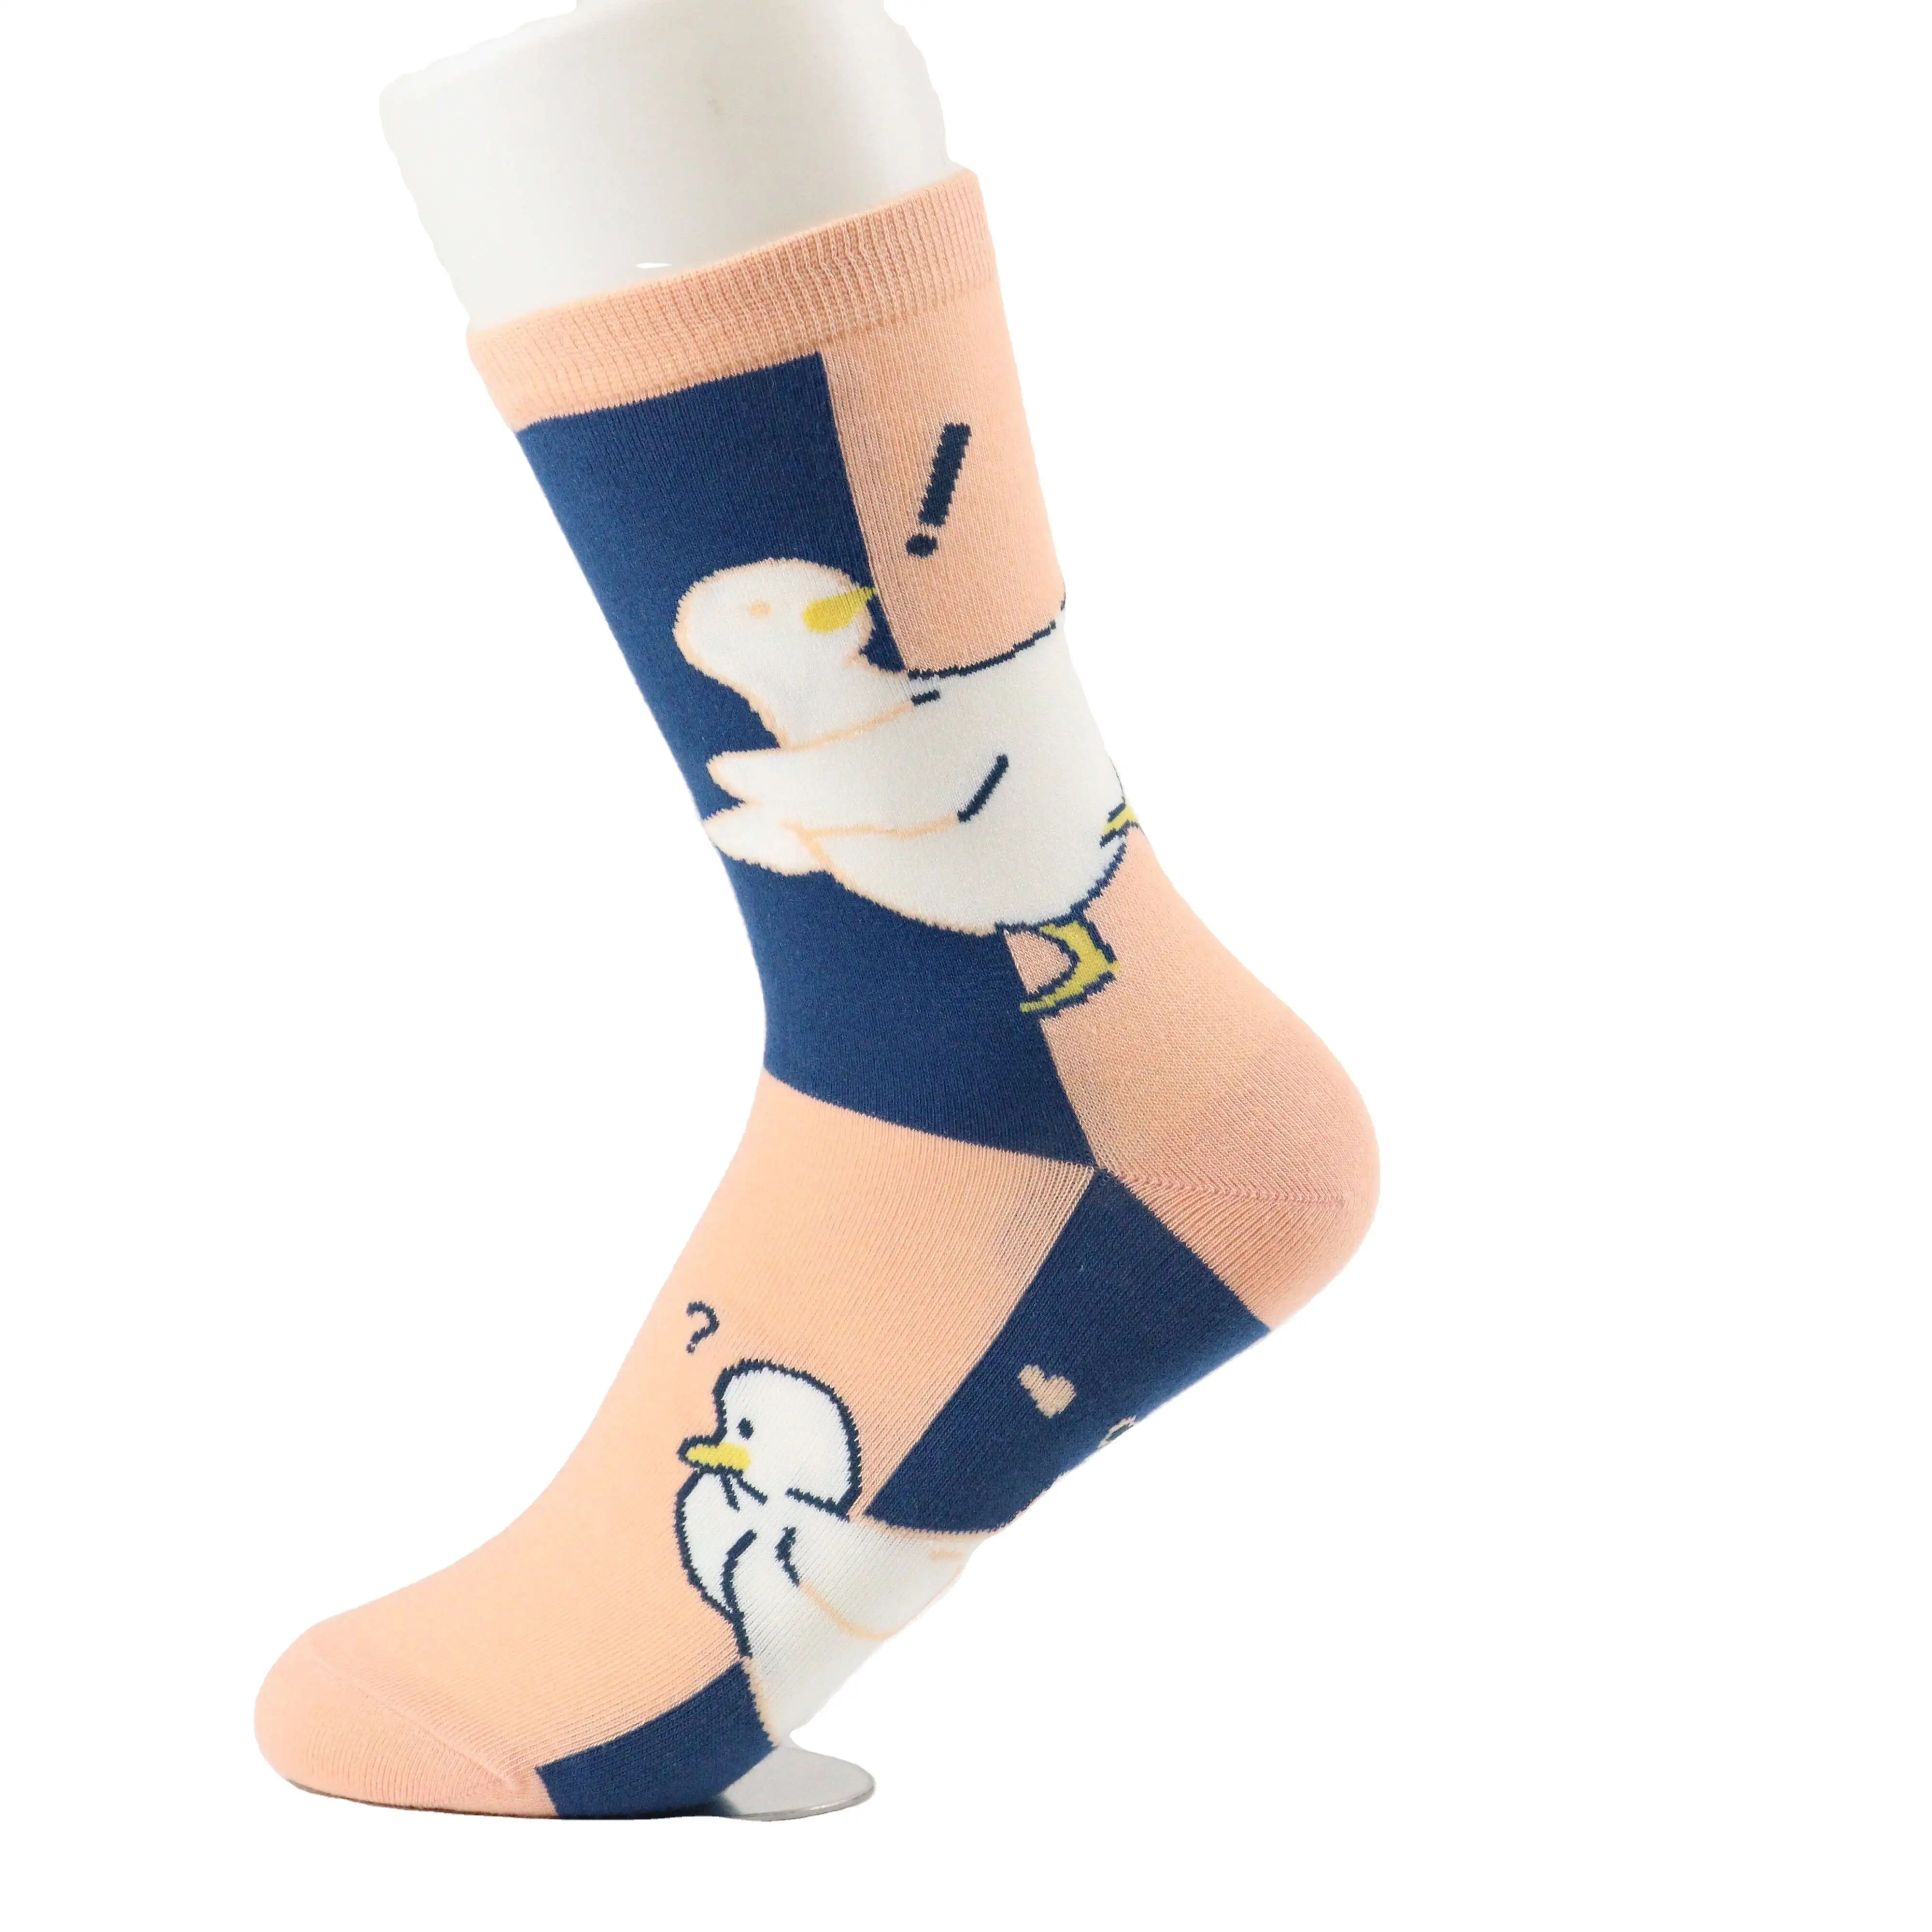 Дешевые оптовые носки хлопчатобумажные носки спортивные мужские носки Sox на заказ от производителя